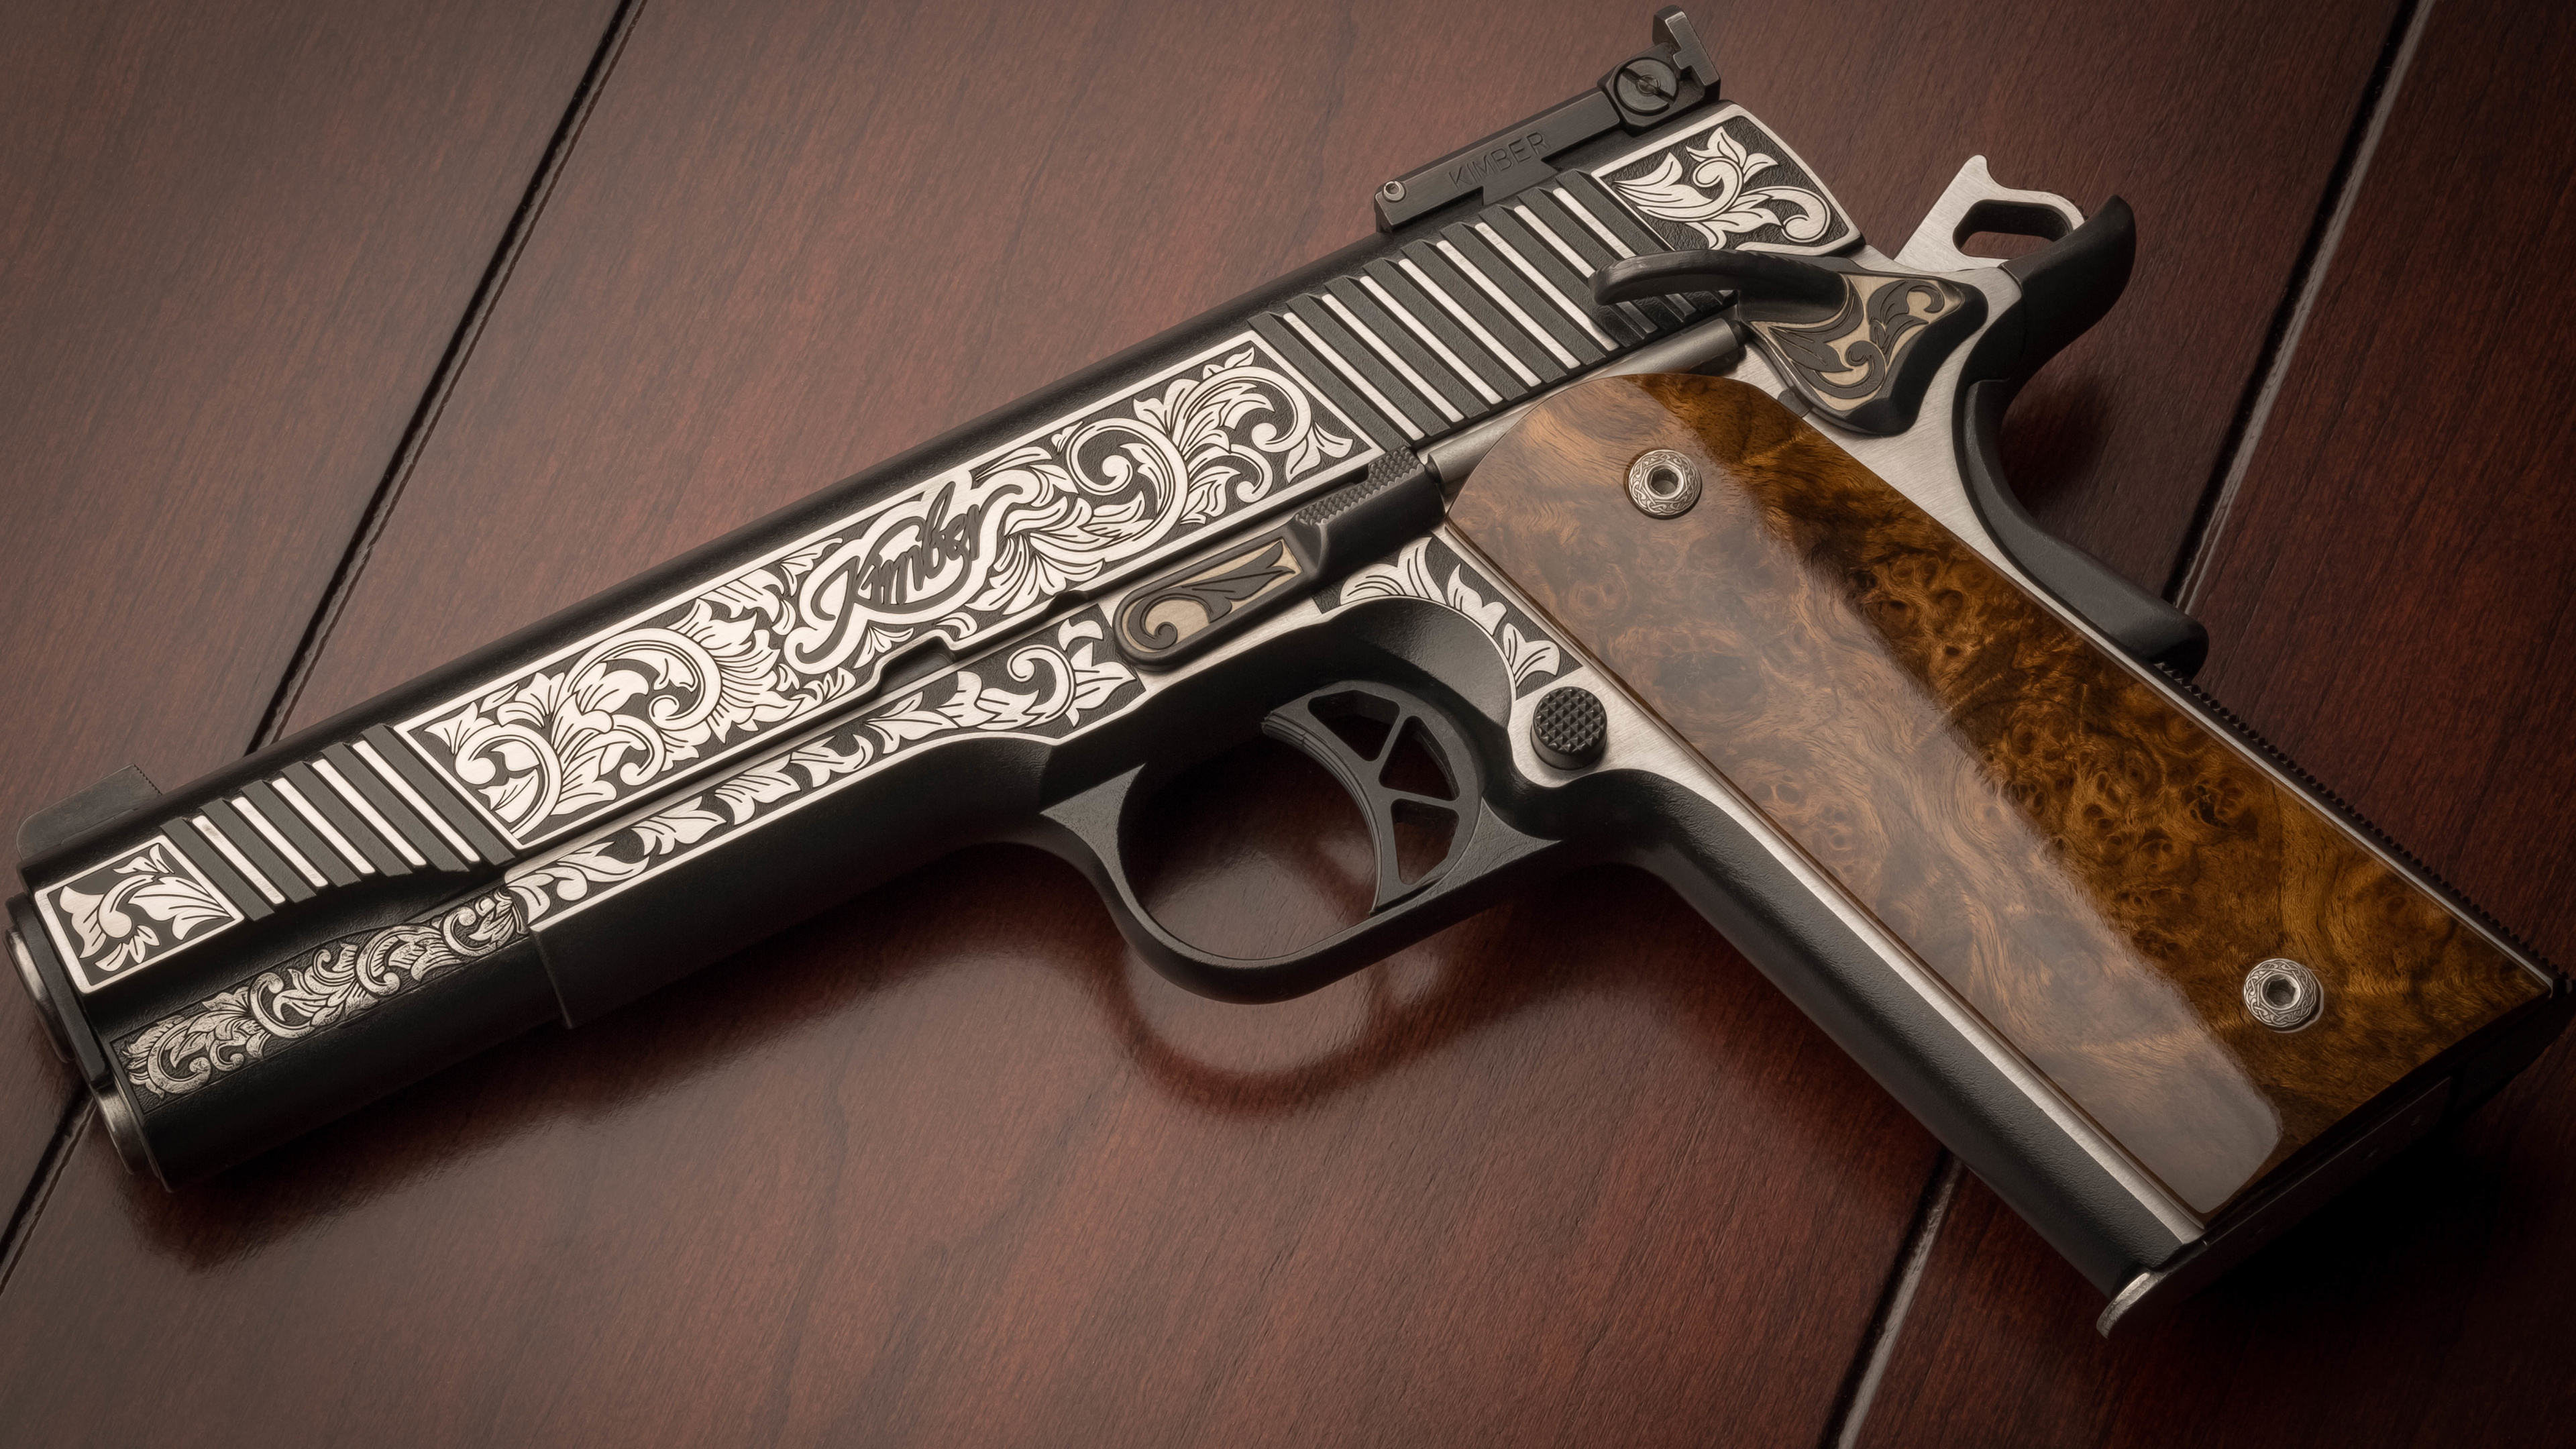 M1911 Pistole, Feuerwaffe, Trigger, Gun Barrel, Pistole Zubehör. Wallpaper in 3840x2160 Resolution